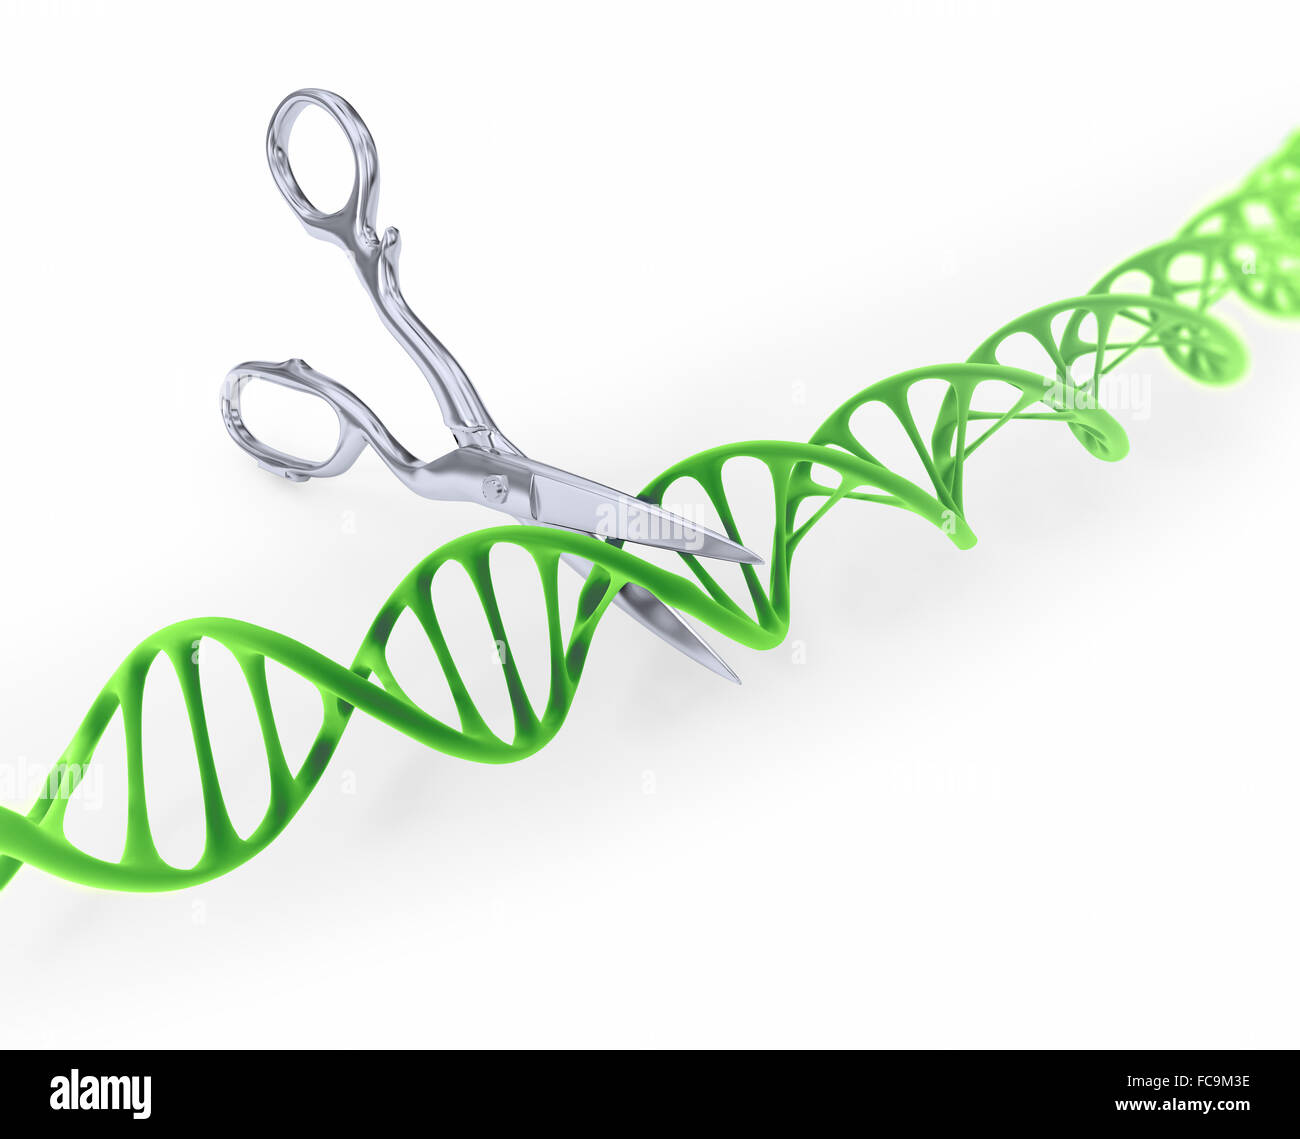 DNA-Strang schneiden mit der Schere - gen konzeptionelle Darstellung  bearbeiten Stockfotografie - Alamy